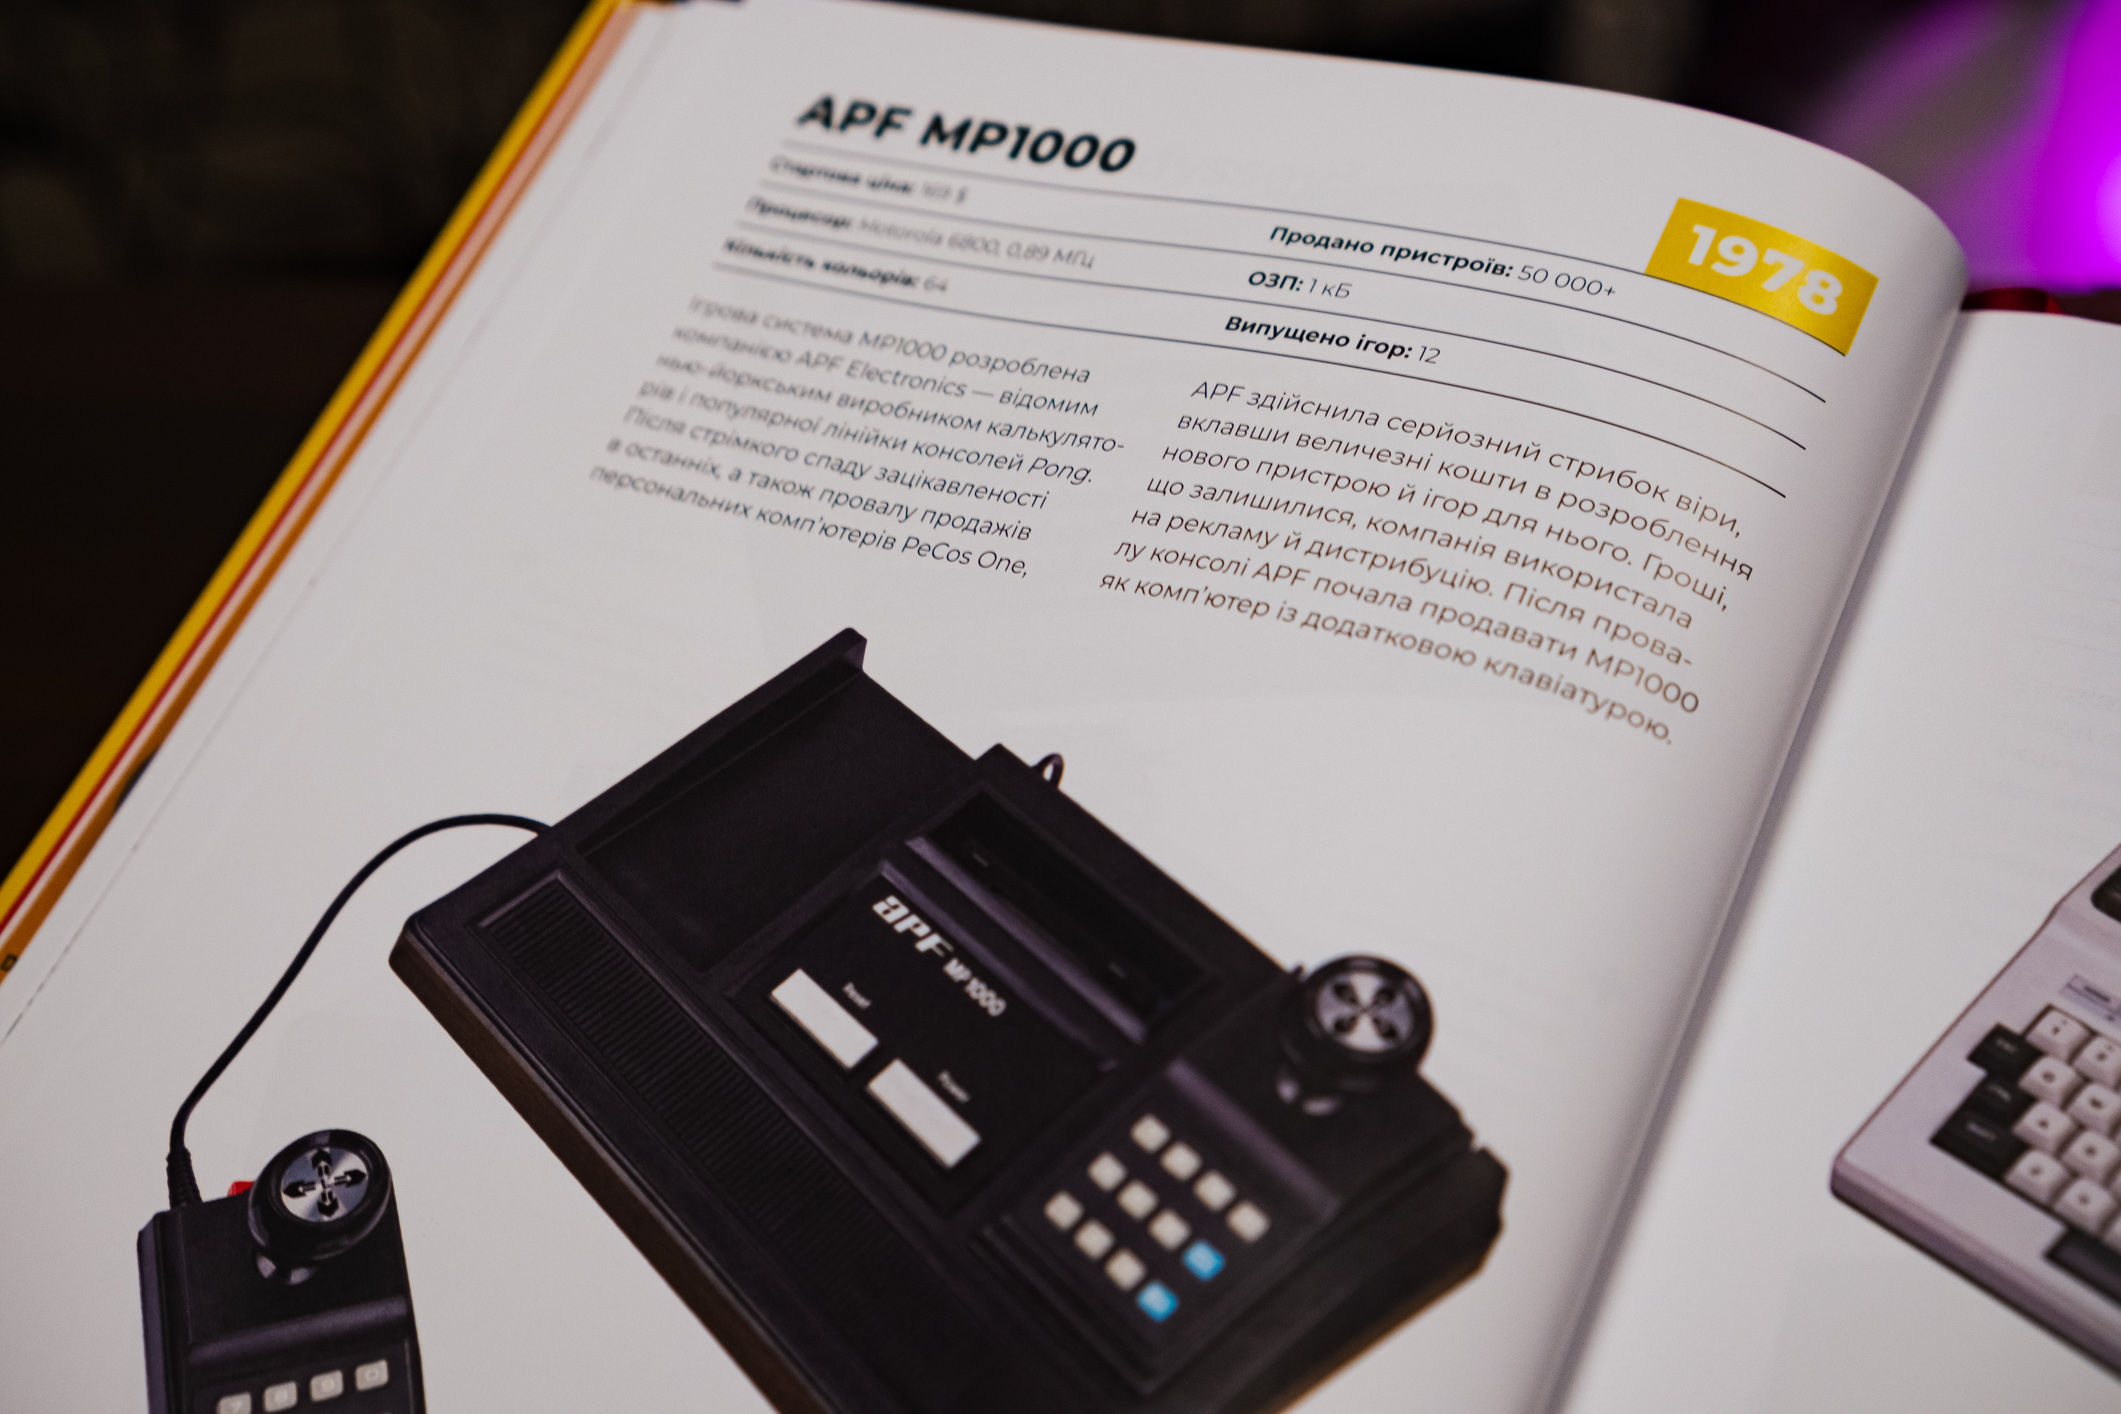 Огляд артбука «Ігрові консолі 2.0: Історія у фотографіях від Atari до Xbox»